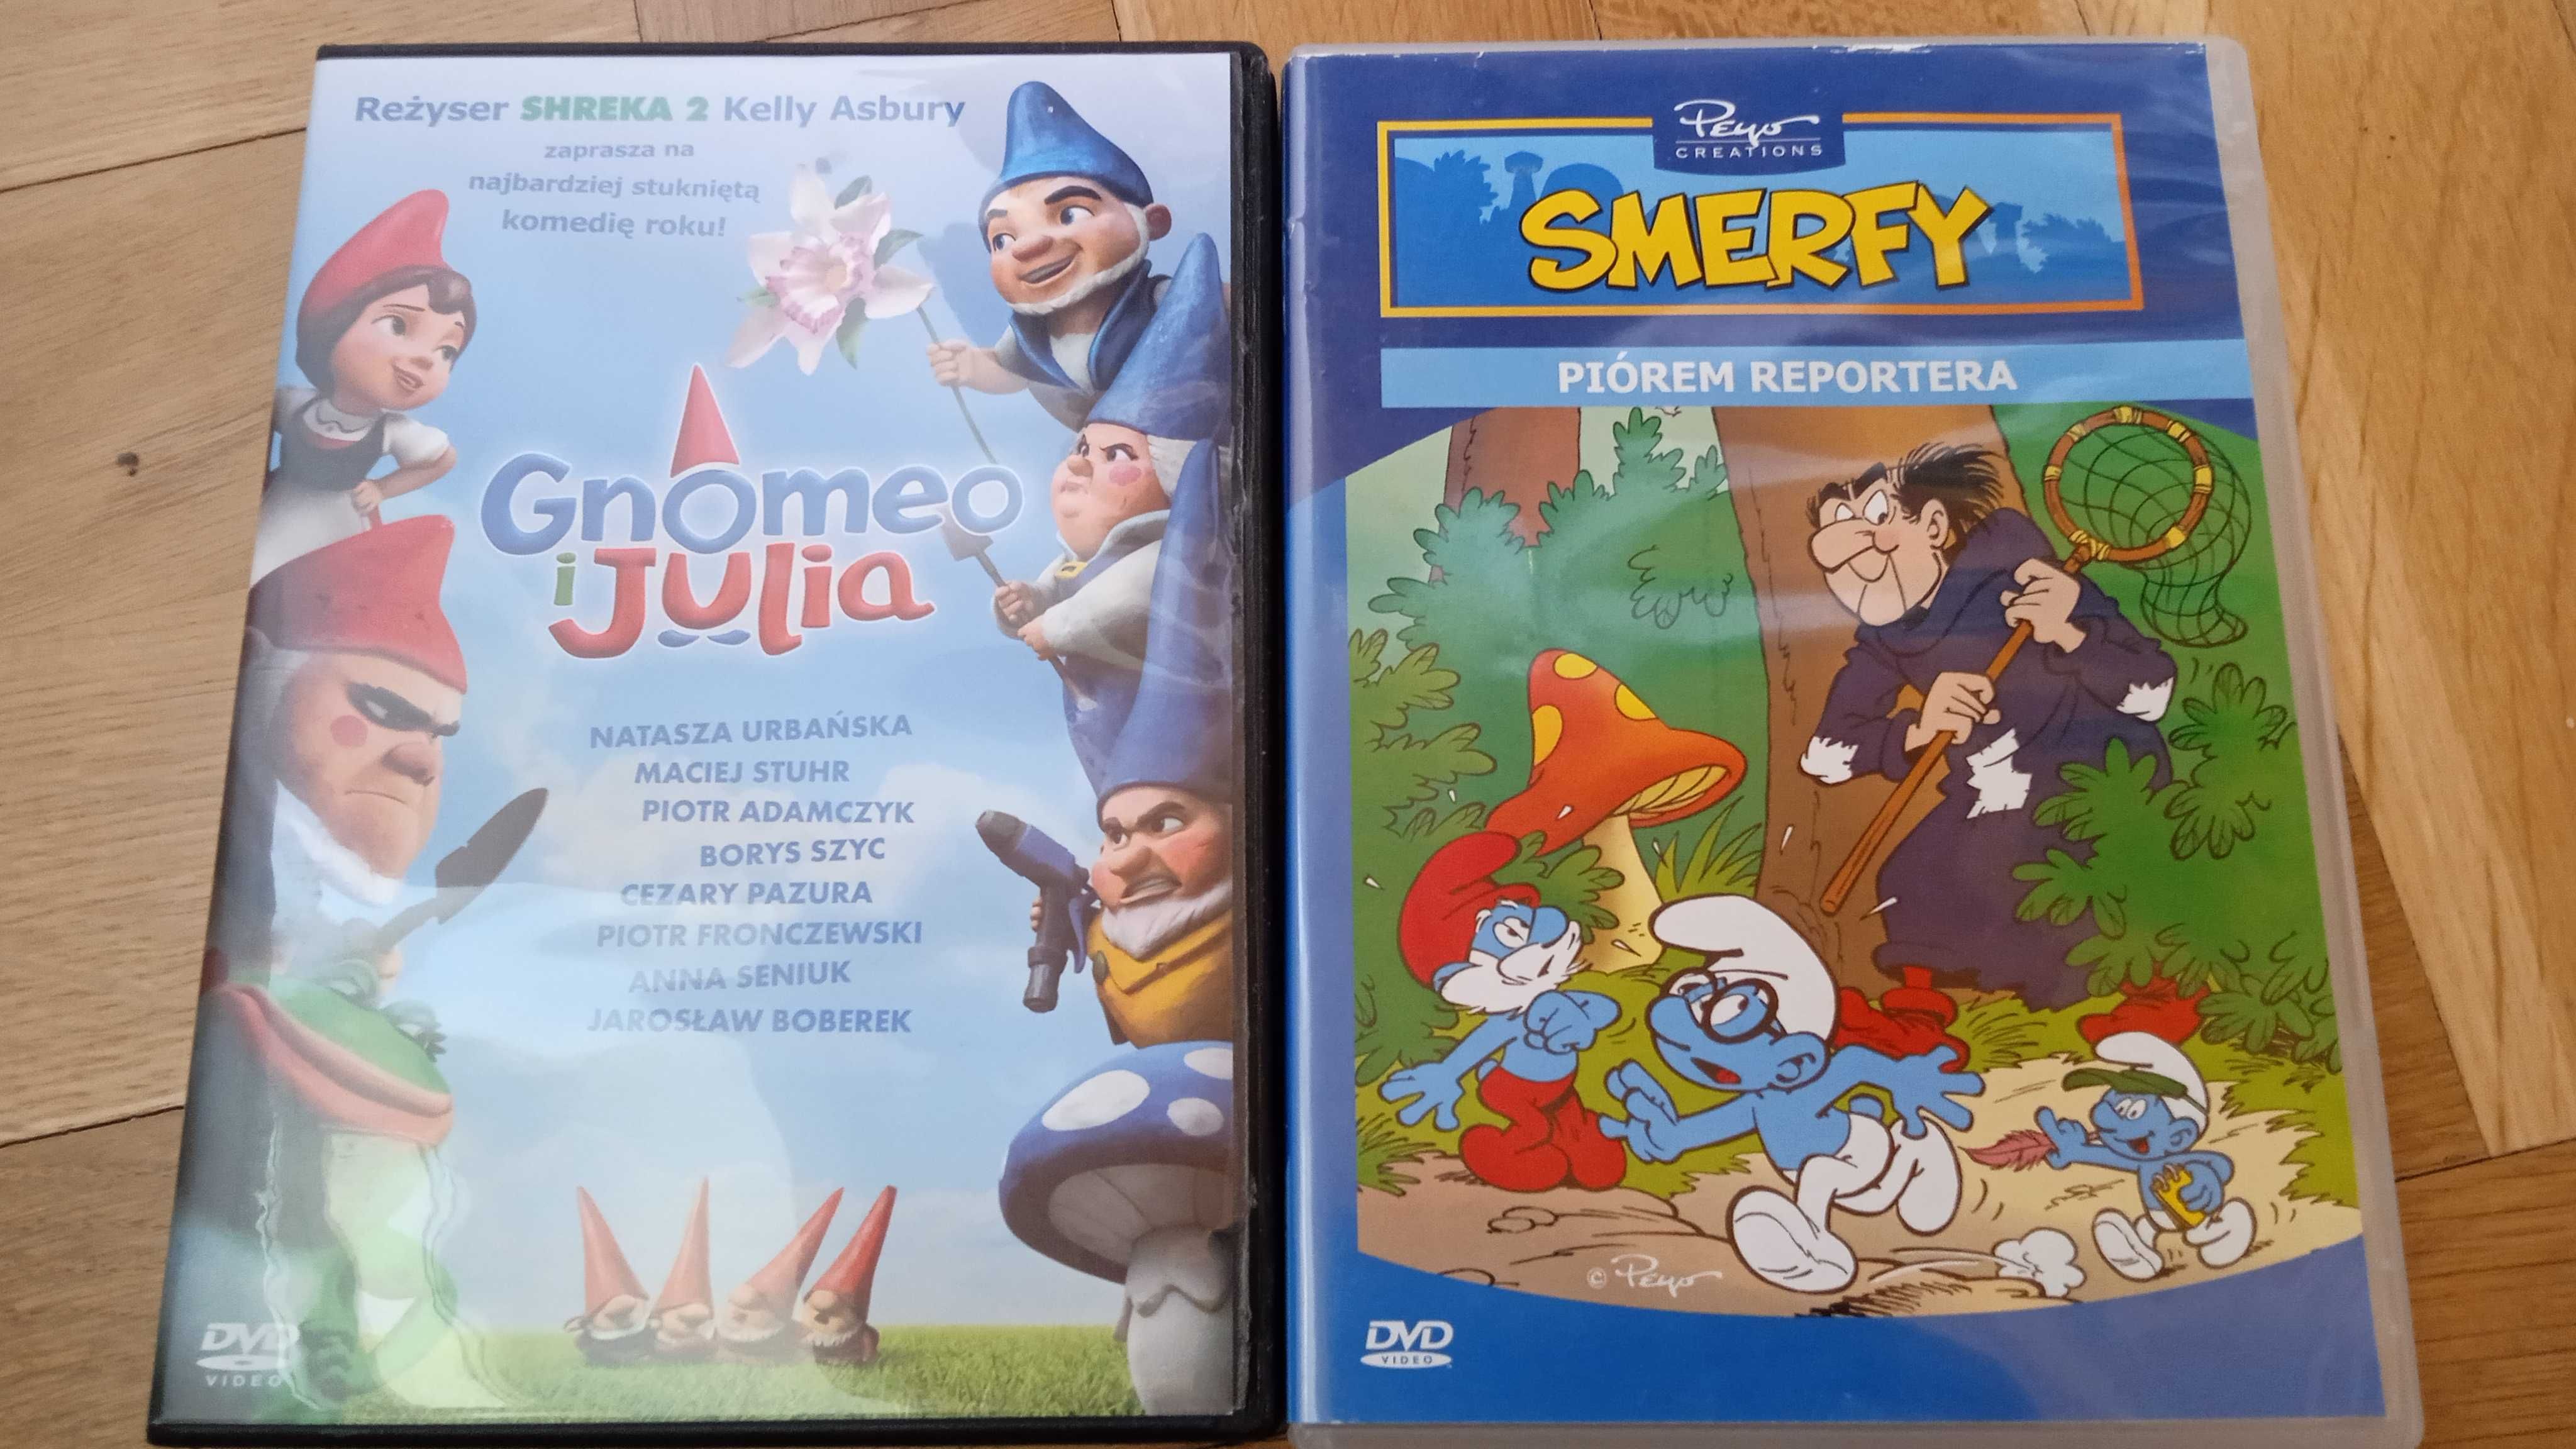 Gnomeo i Julia i Smerfy - DVD dla dzieci, używane